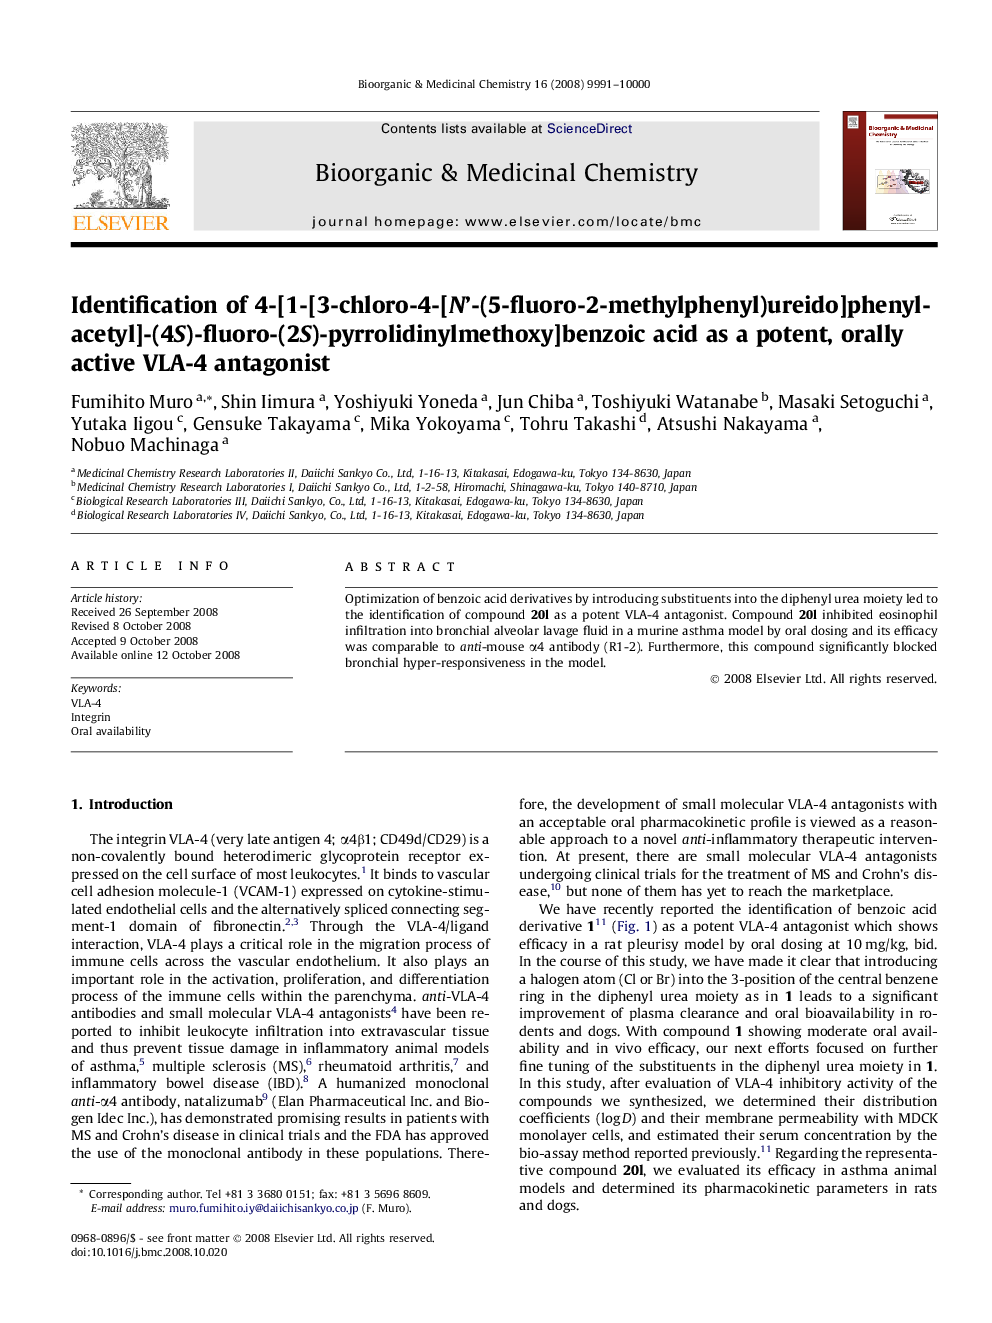 Identification of 4-[1-[3-chloro-4-[N’-(5-fluoro-2-methylphenyl)ureido]phenylacetyl]-(4S)-fluoro-(2S)-pyrrolidinylmethoxy]benzoic acid as a potent, orally active VLA-4 antagonist